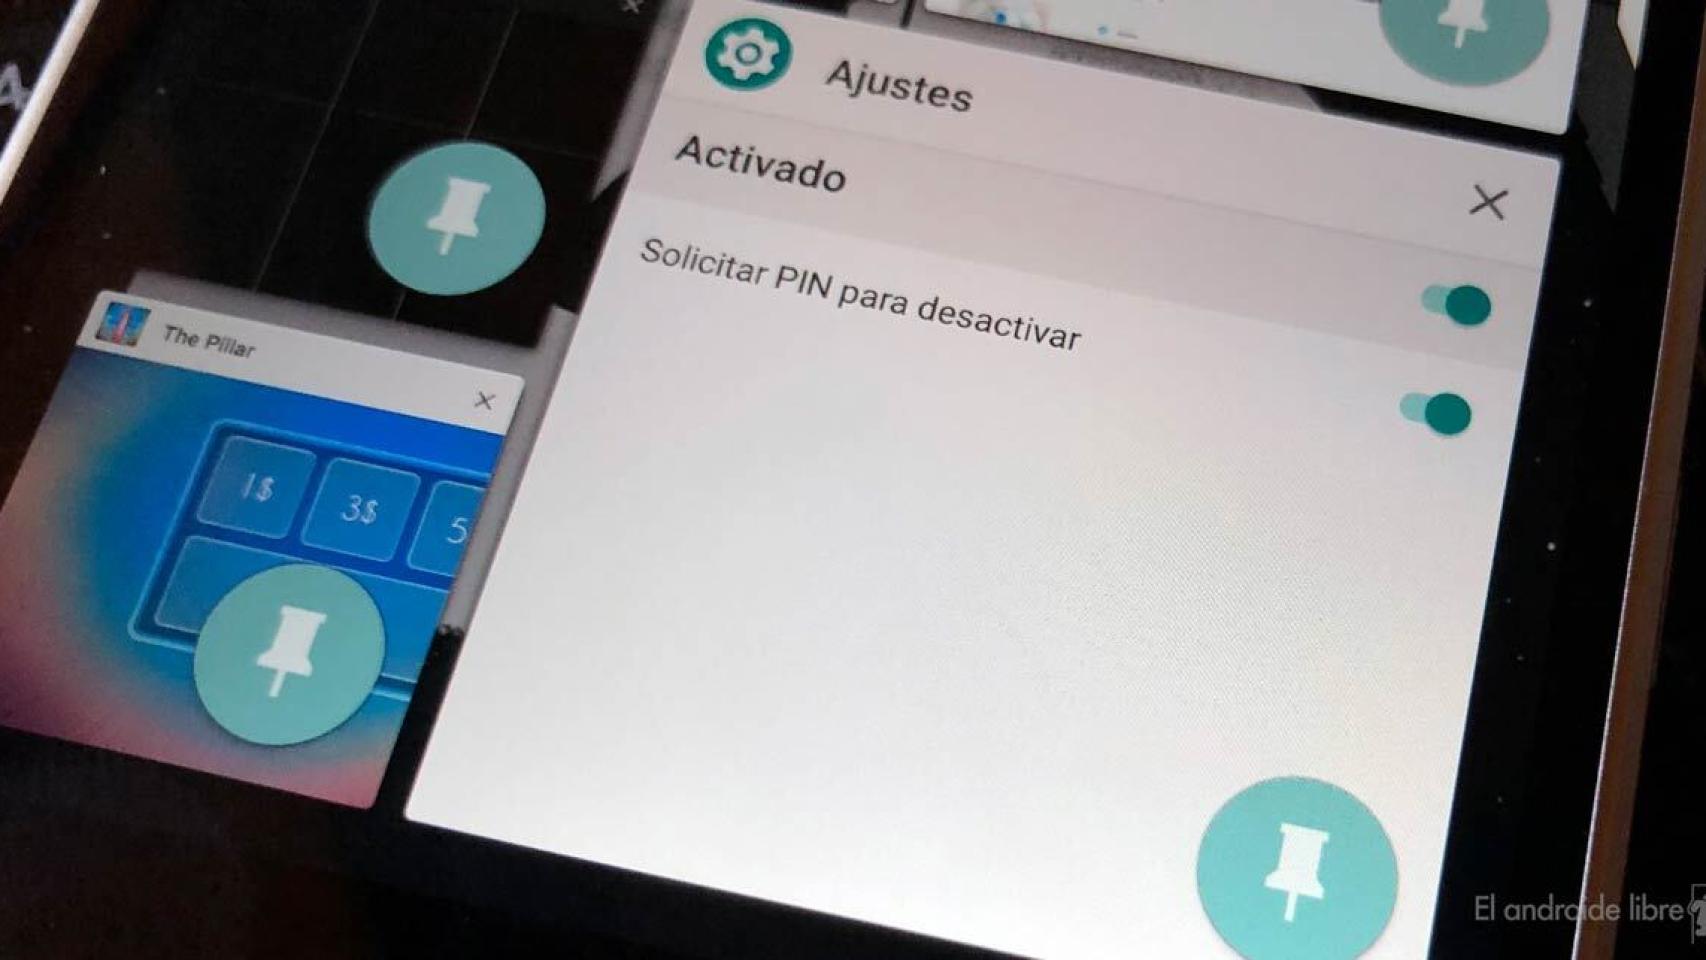 Pin on Apps y Juegos para Android